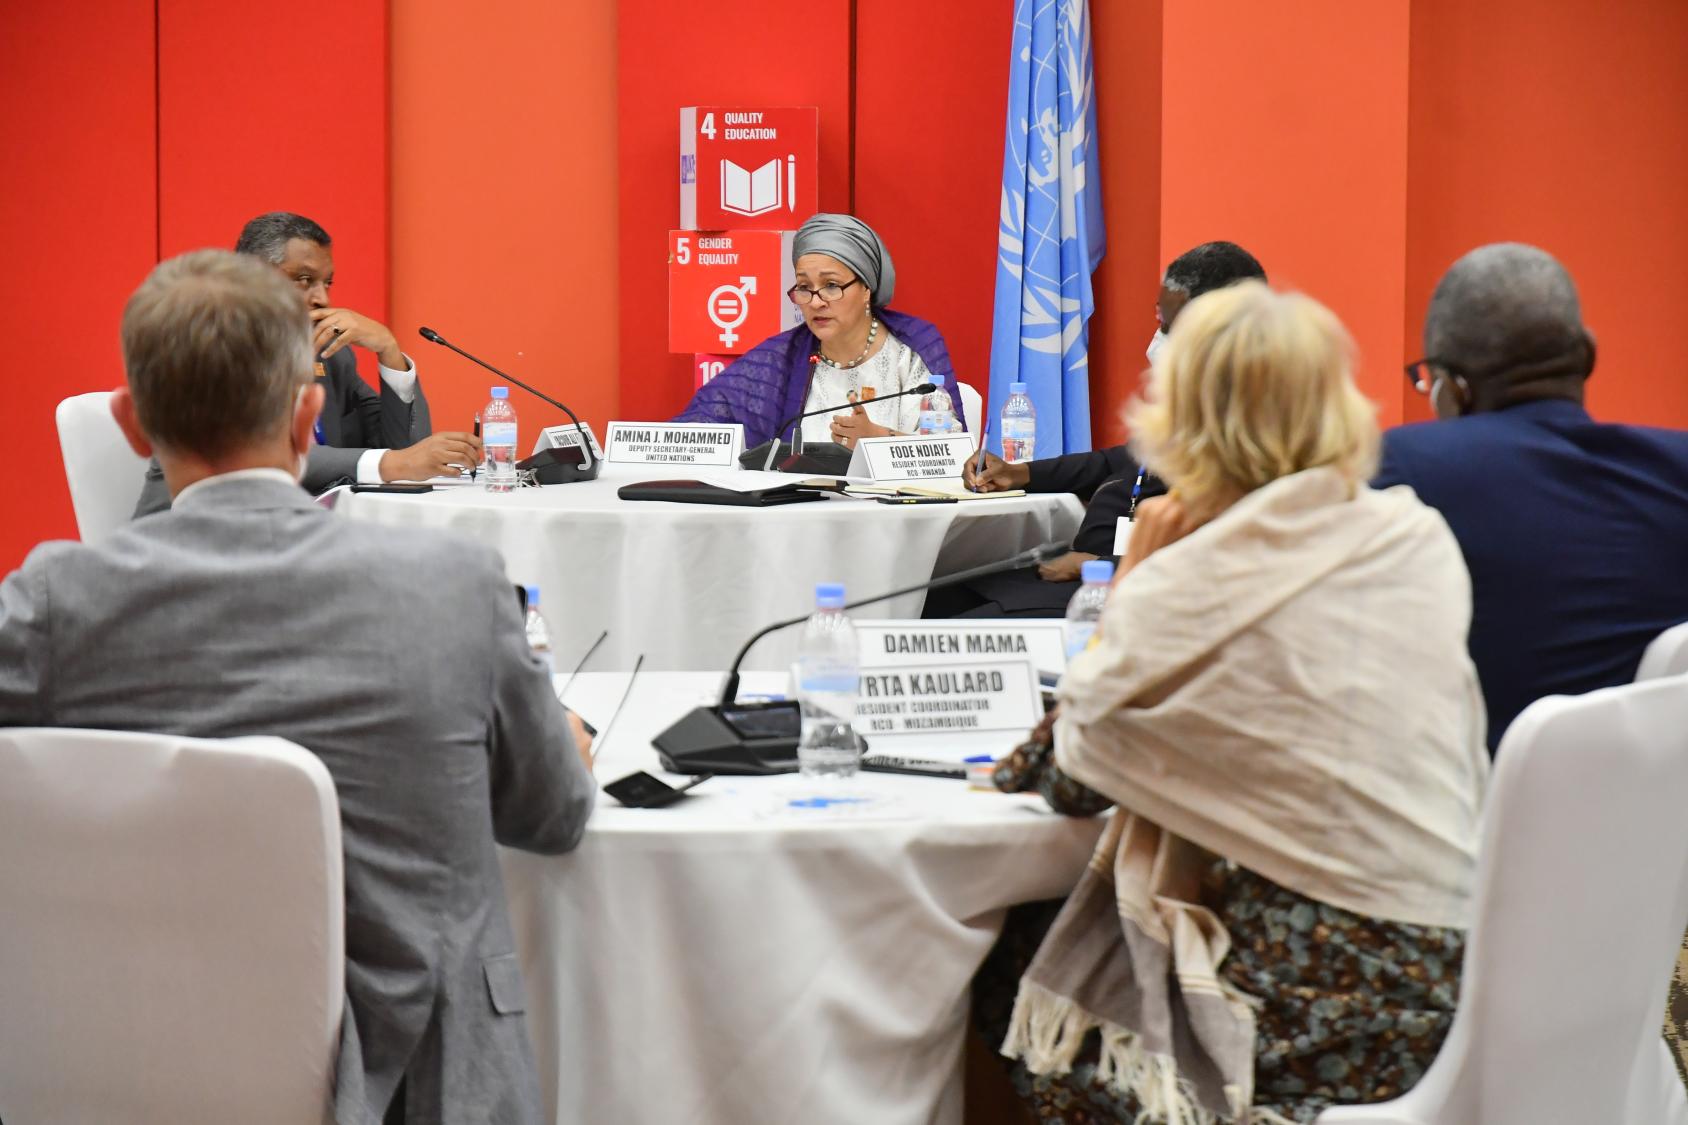 La Vicesecretaria General de las Naciones Unidas, Amina J. Mohammed, en el evento en el cual instó a los Coordinadores Residentes de toda África a convertir los grandes y diversos desafíos en oportunidades en pro de los ODS.